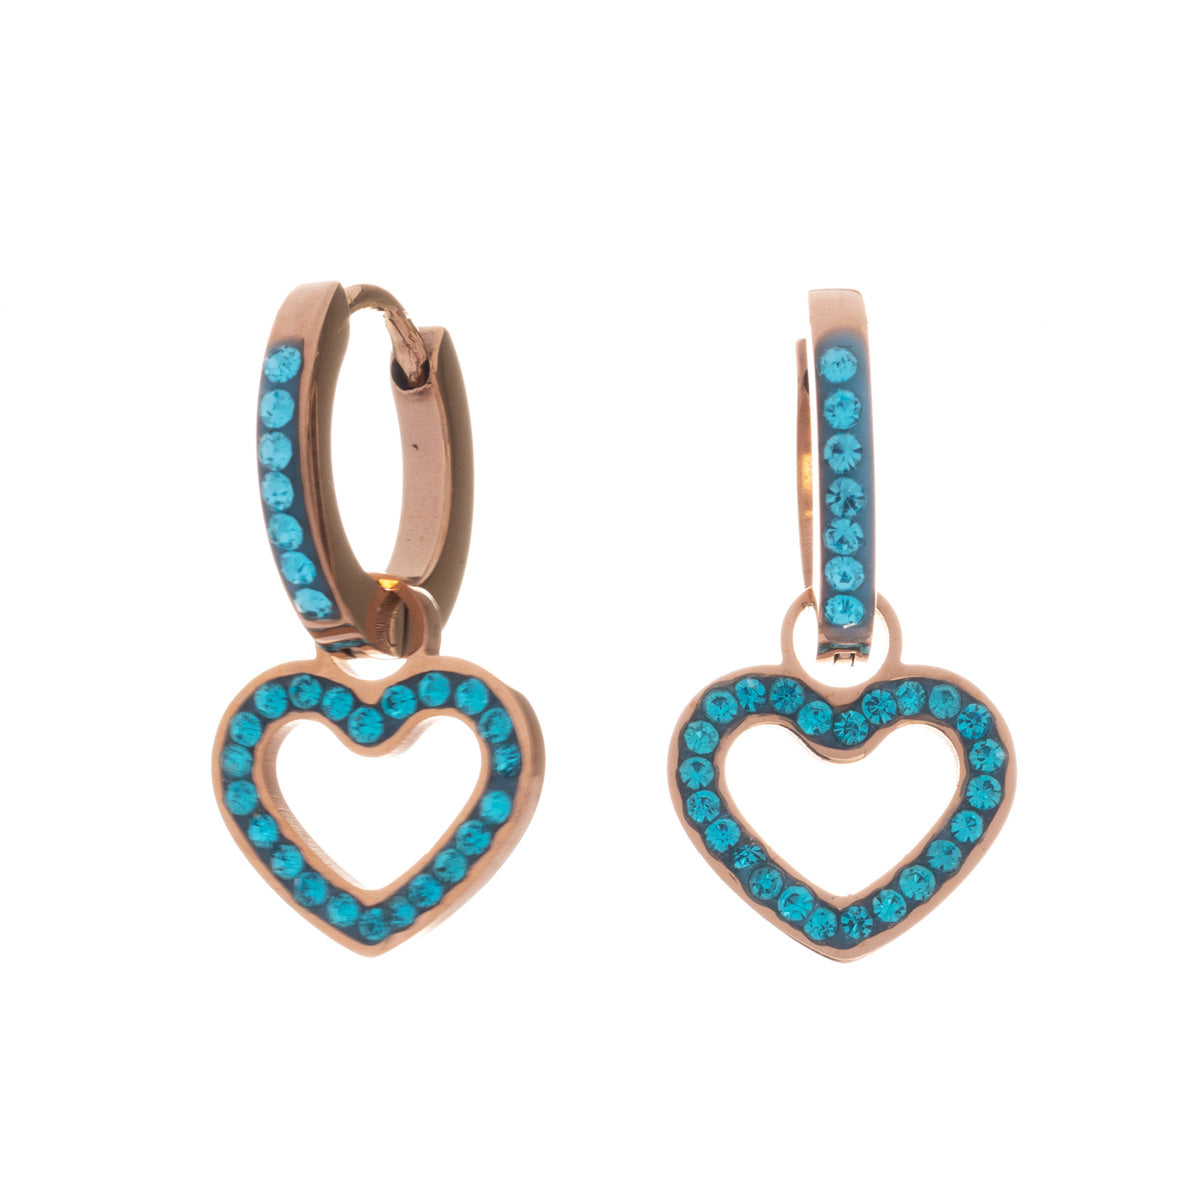 Hanging heart earrings (steel 316L)